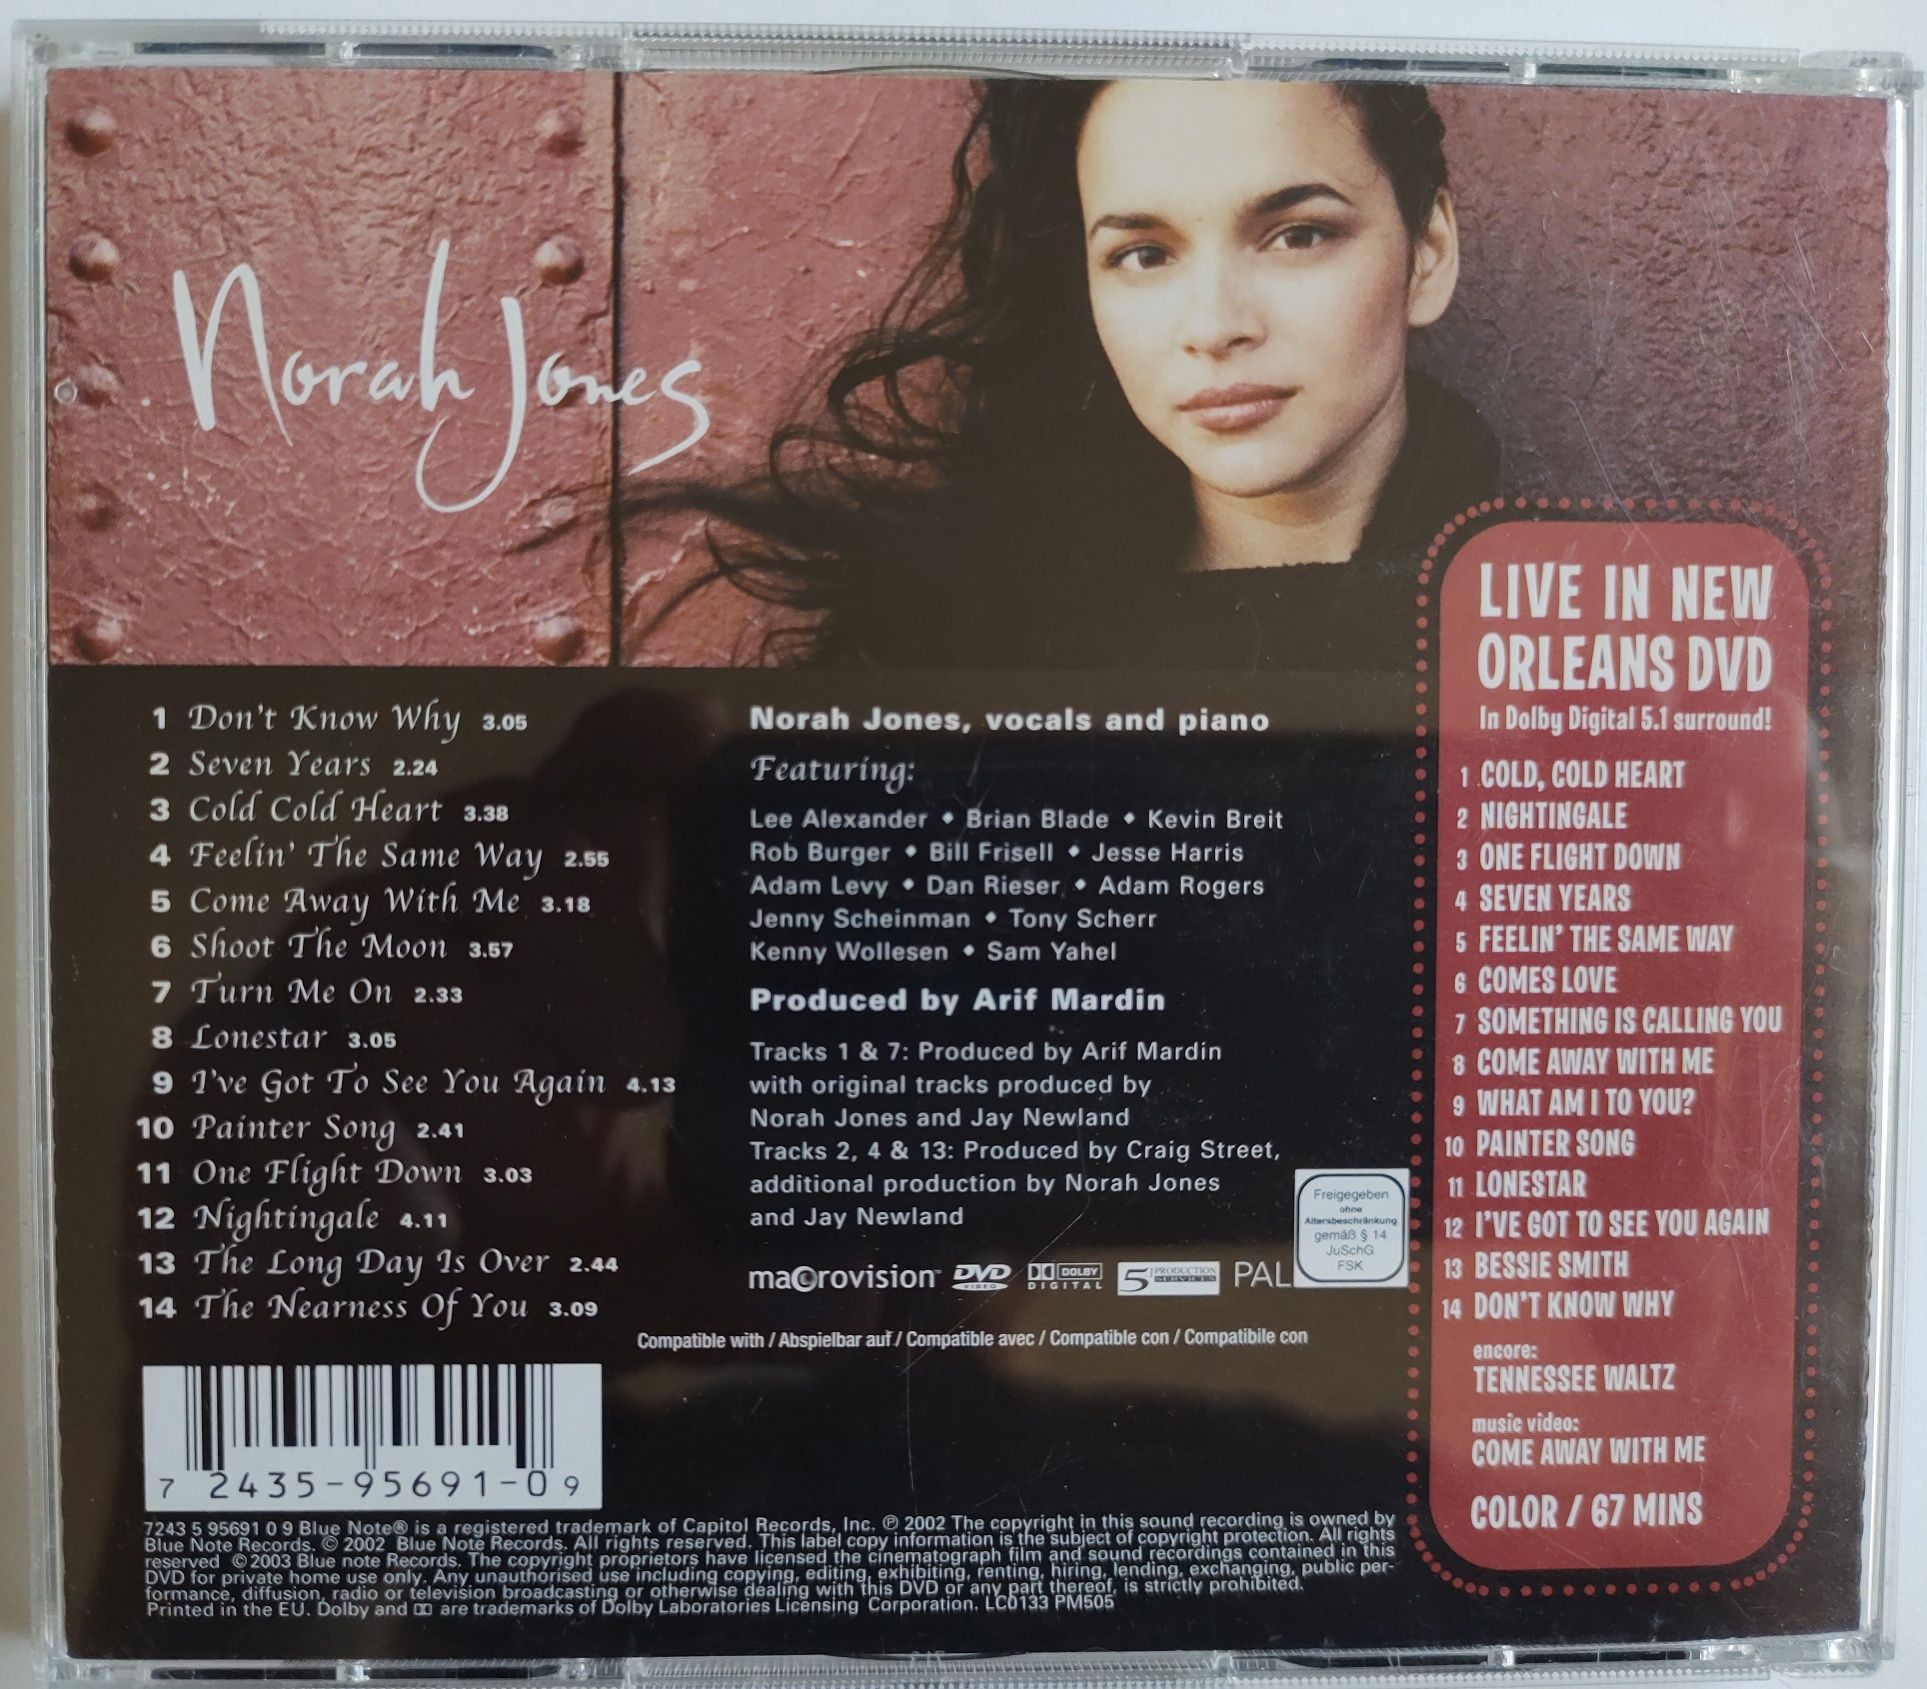 Norah Jones Deluxe edition CD plus DVD